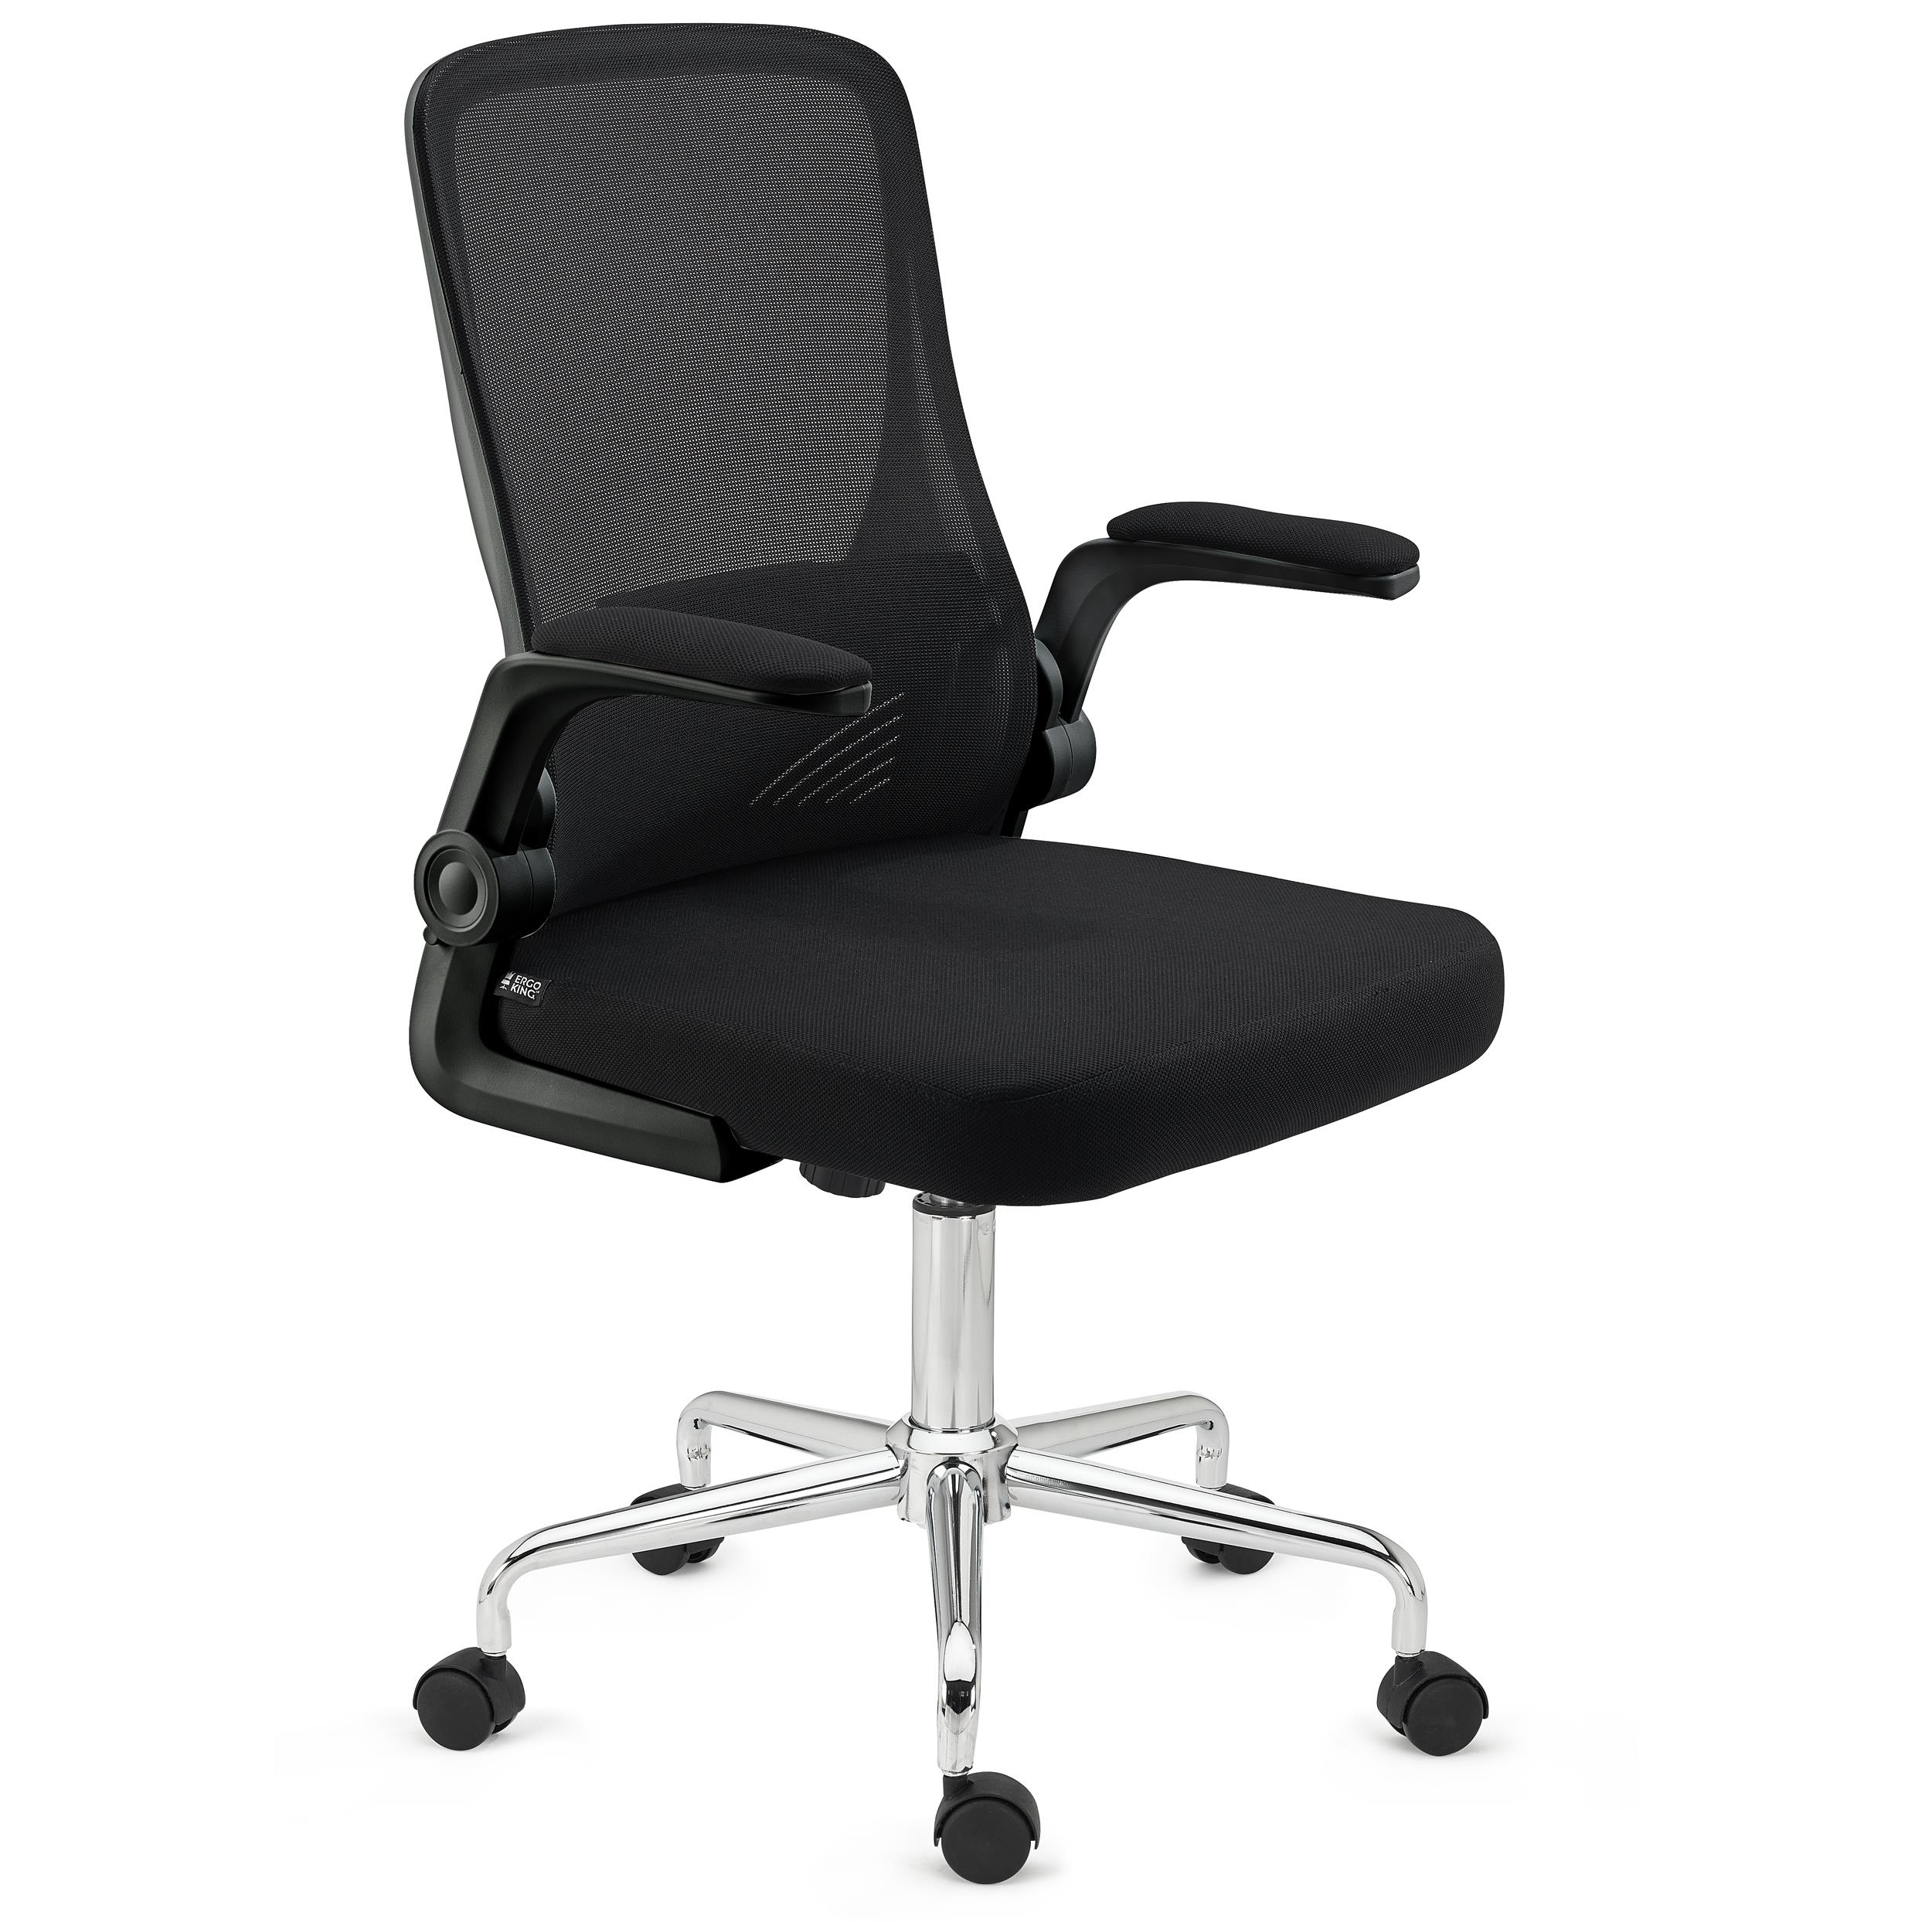 Chaises de bureau accoudoir rabattable à 90°, chaise d'ordinateur  ergonomique, fauteuil de bureau avec accoudoirs pliants, support lombaire,  chaise de bureau confortable en maille respirante, noir  IKI-Officechair-8-black - Conforama